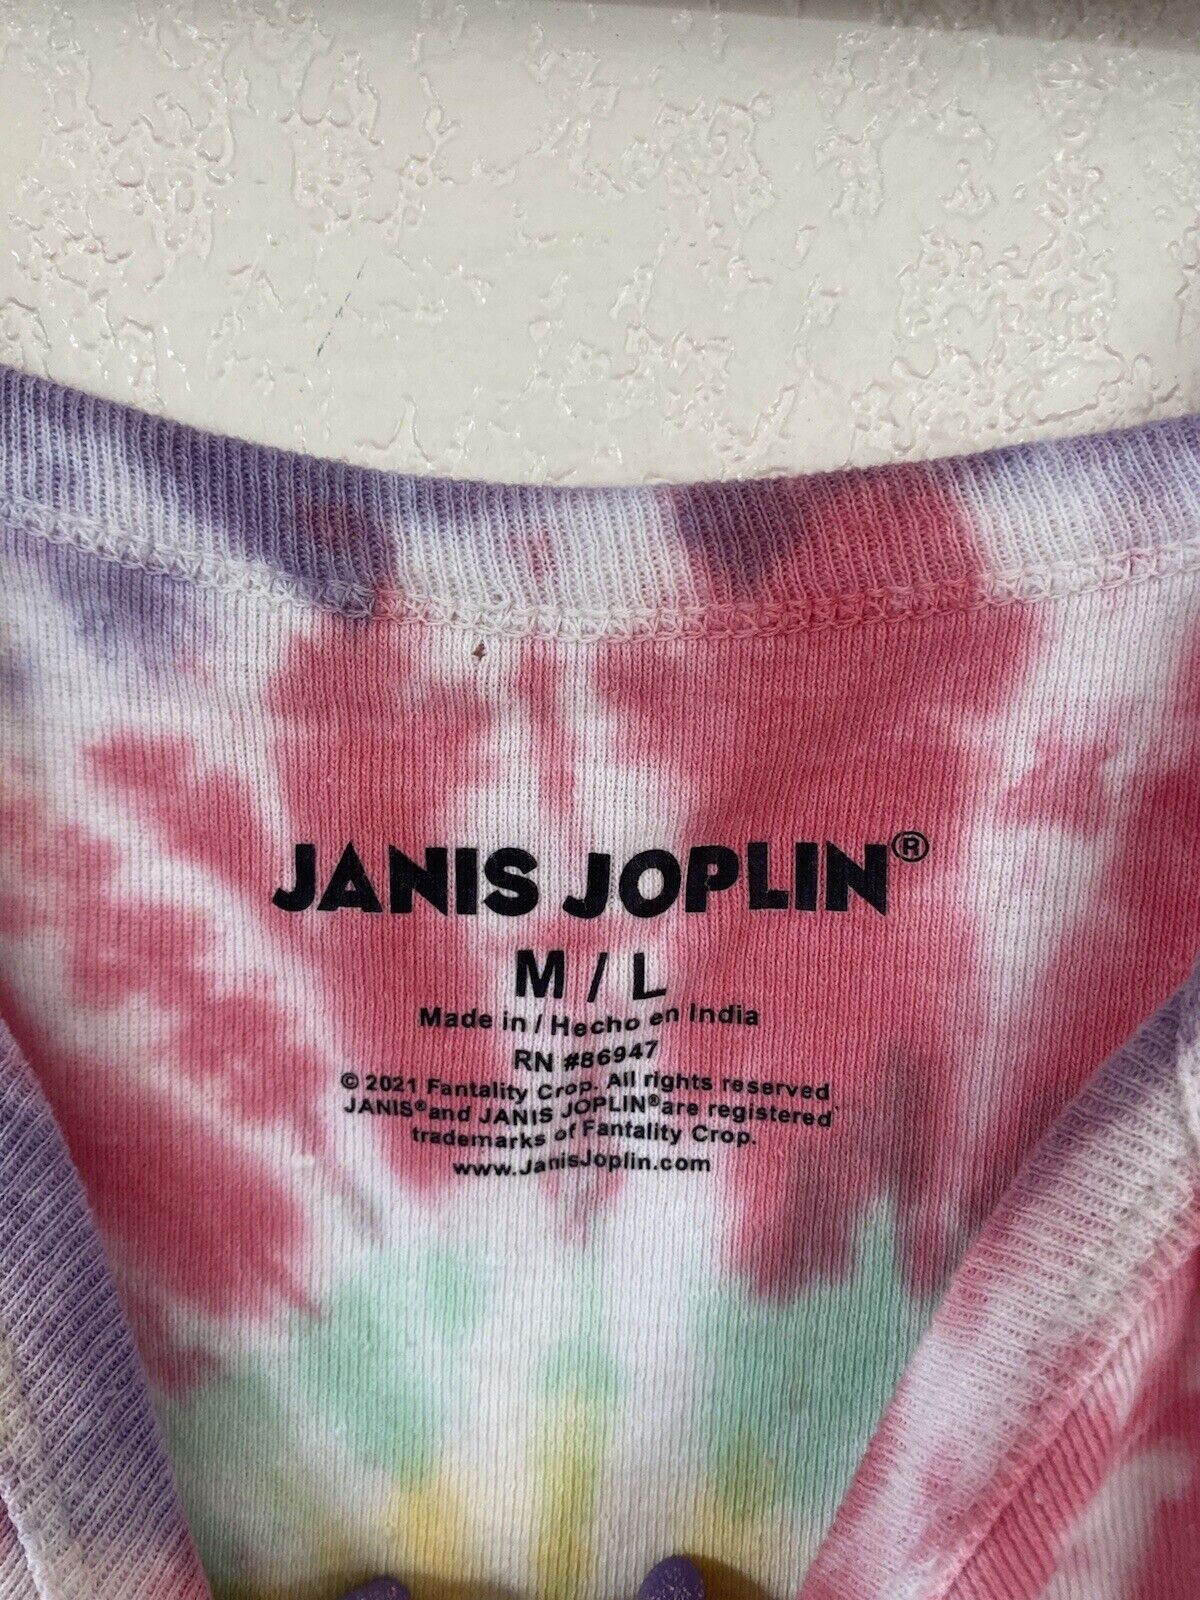 Tie Dye Crop Tank Top - Janis Joplin - Women’s Medium # 2648